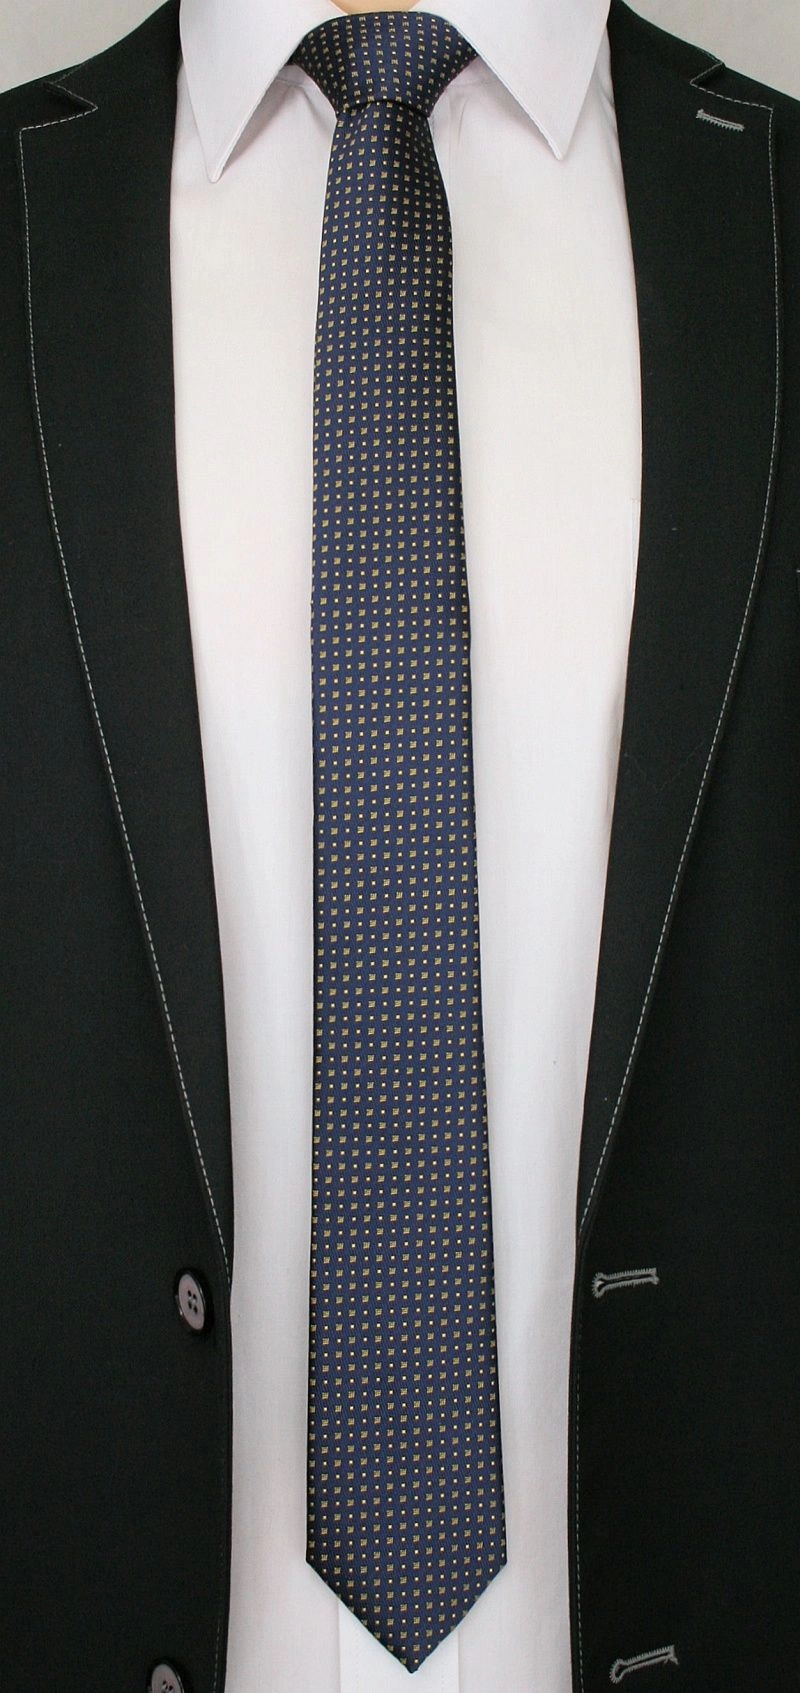 Granatowy Elegancki Krawat Męski -ALTIES- 6 cm, w Żółte Kwadraciki